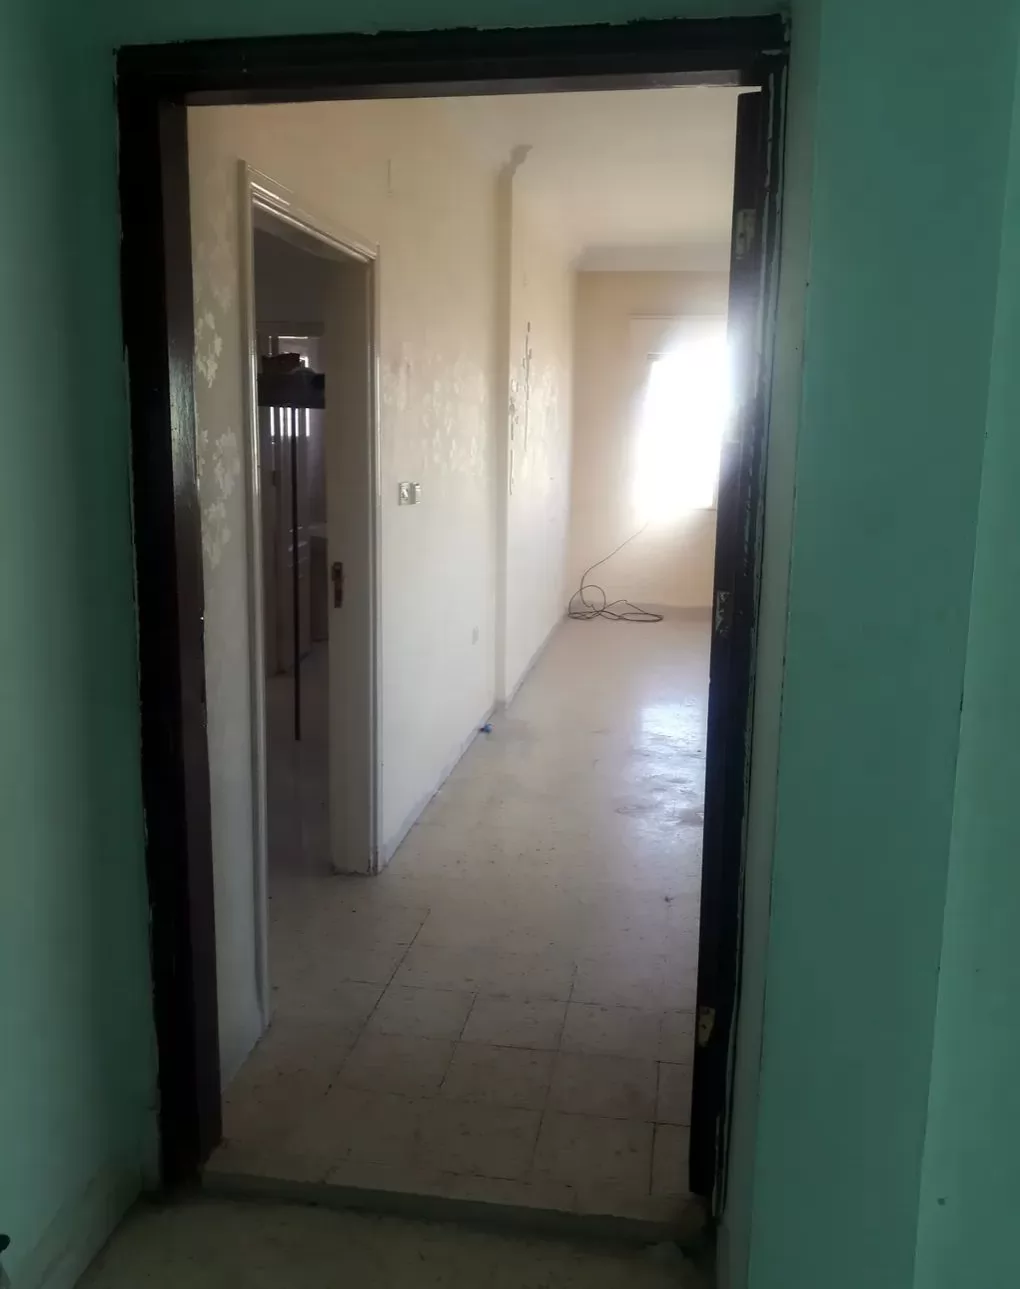 سكني عقار جاهز 2 غرف  غير مفروش شقة  للإيجار في عمان #25922 - 1  صورة 